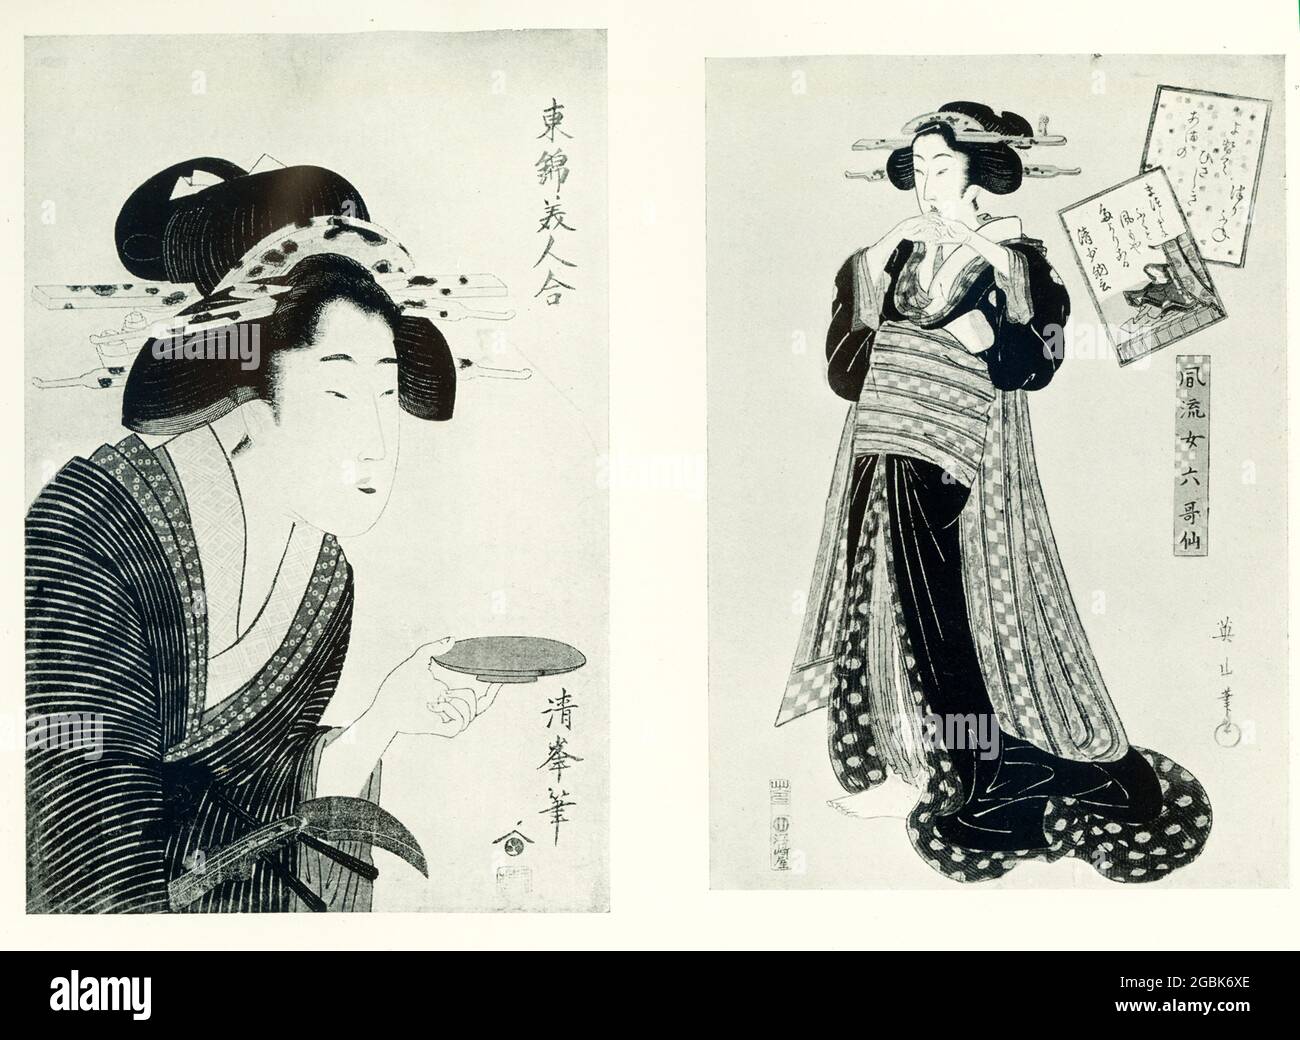 A SINISTRA: Kiyomine-Donna tenendo fuori una tazza di sake firmata Kiyomine. DESTRA:Yeizan-figura-studio-completo di una geisha firmato Yeizan l'artista giapponese Kiyomine Torii ha vissuto dal 1787 al 1868. Kikukawa Eizan (1867) è stato un designer di legno giapponese di stile ukiyo-e. stampe. Foto Stock